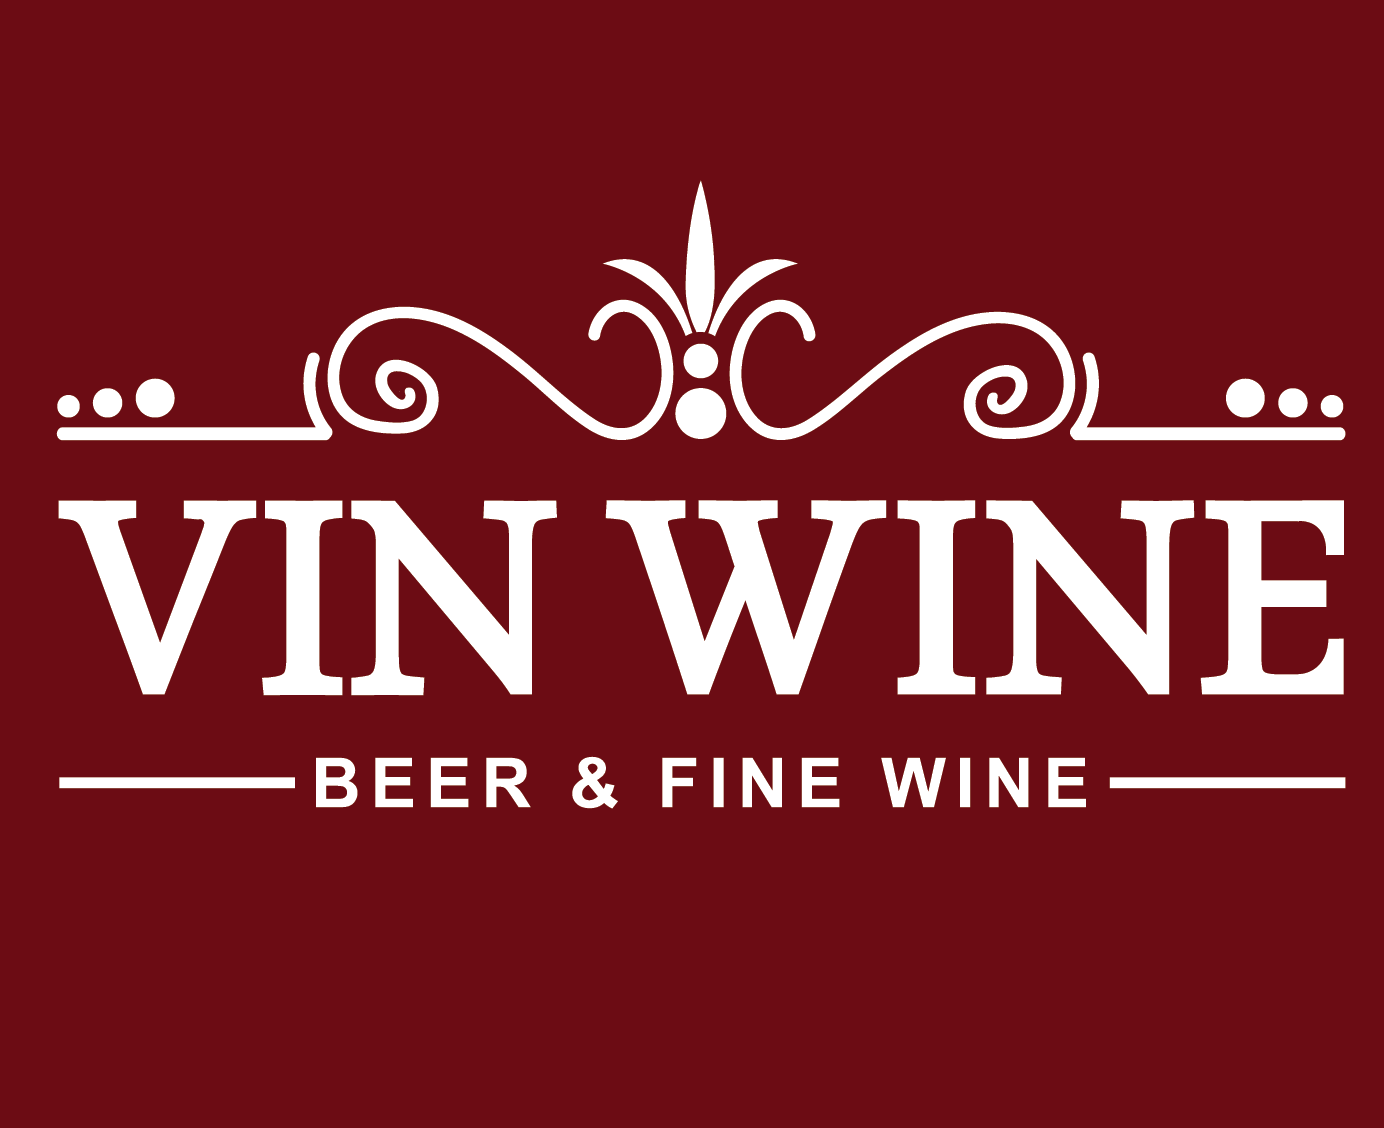 Vinwine.vn